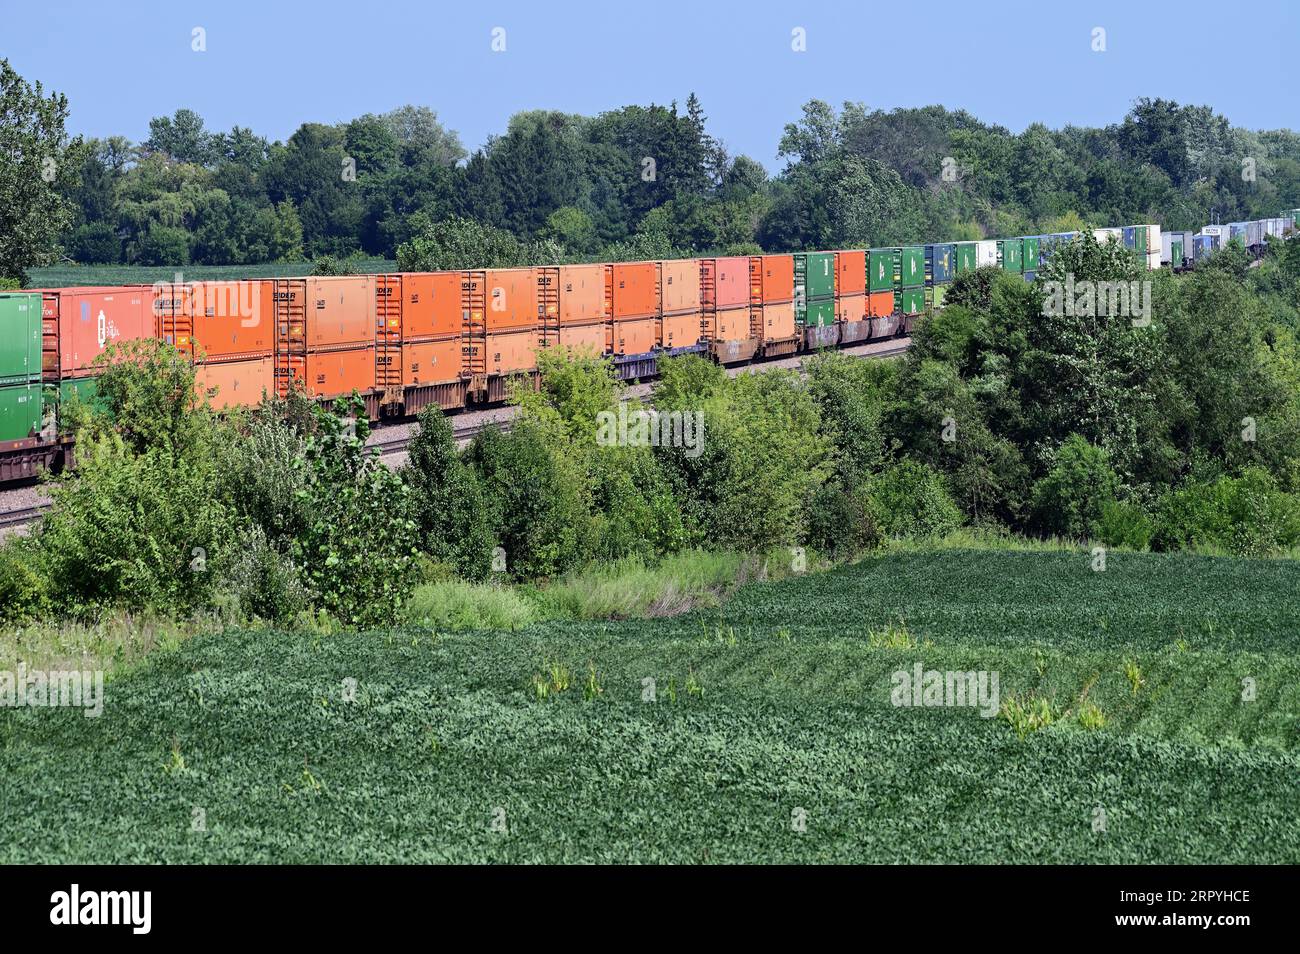 La Fox, Illinois, USA. Ein intermodaler Güterzug der Union Pacific Railroad spaltet sich durch Felder im ländlichen Illinois. Stockfoto